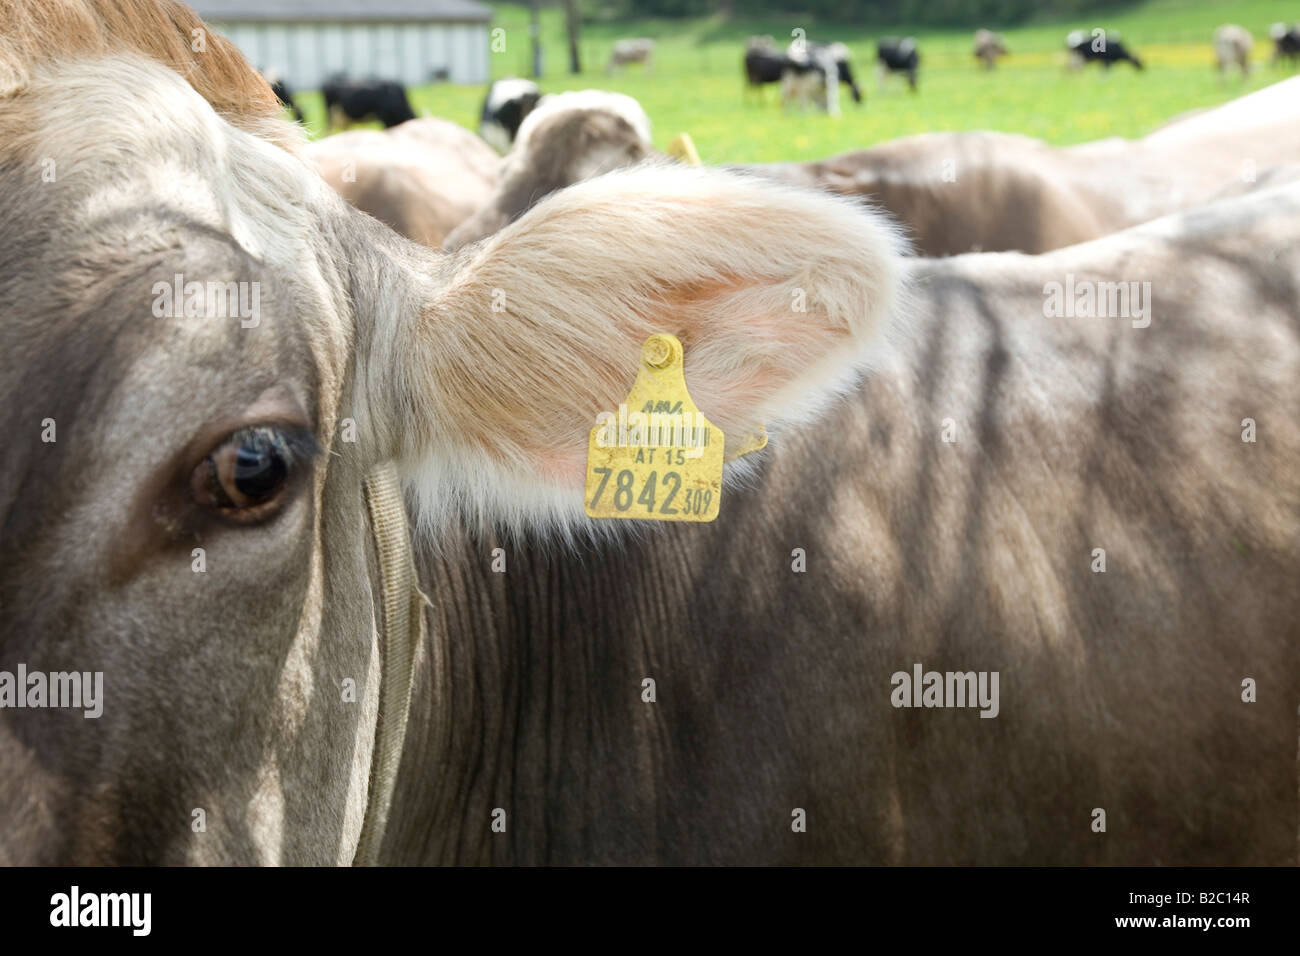 Kuh, beschriftet mit zwei Ohrmarken, gemäß dem Gesetz zur Kennzeichnung von Tieren, Steiermark, Österreich, Europa Stockfoto